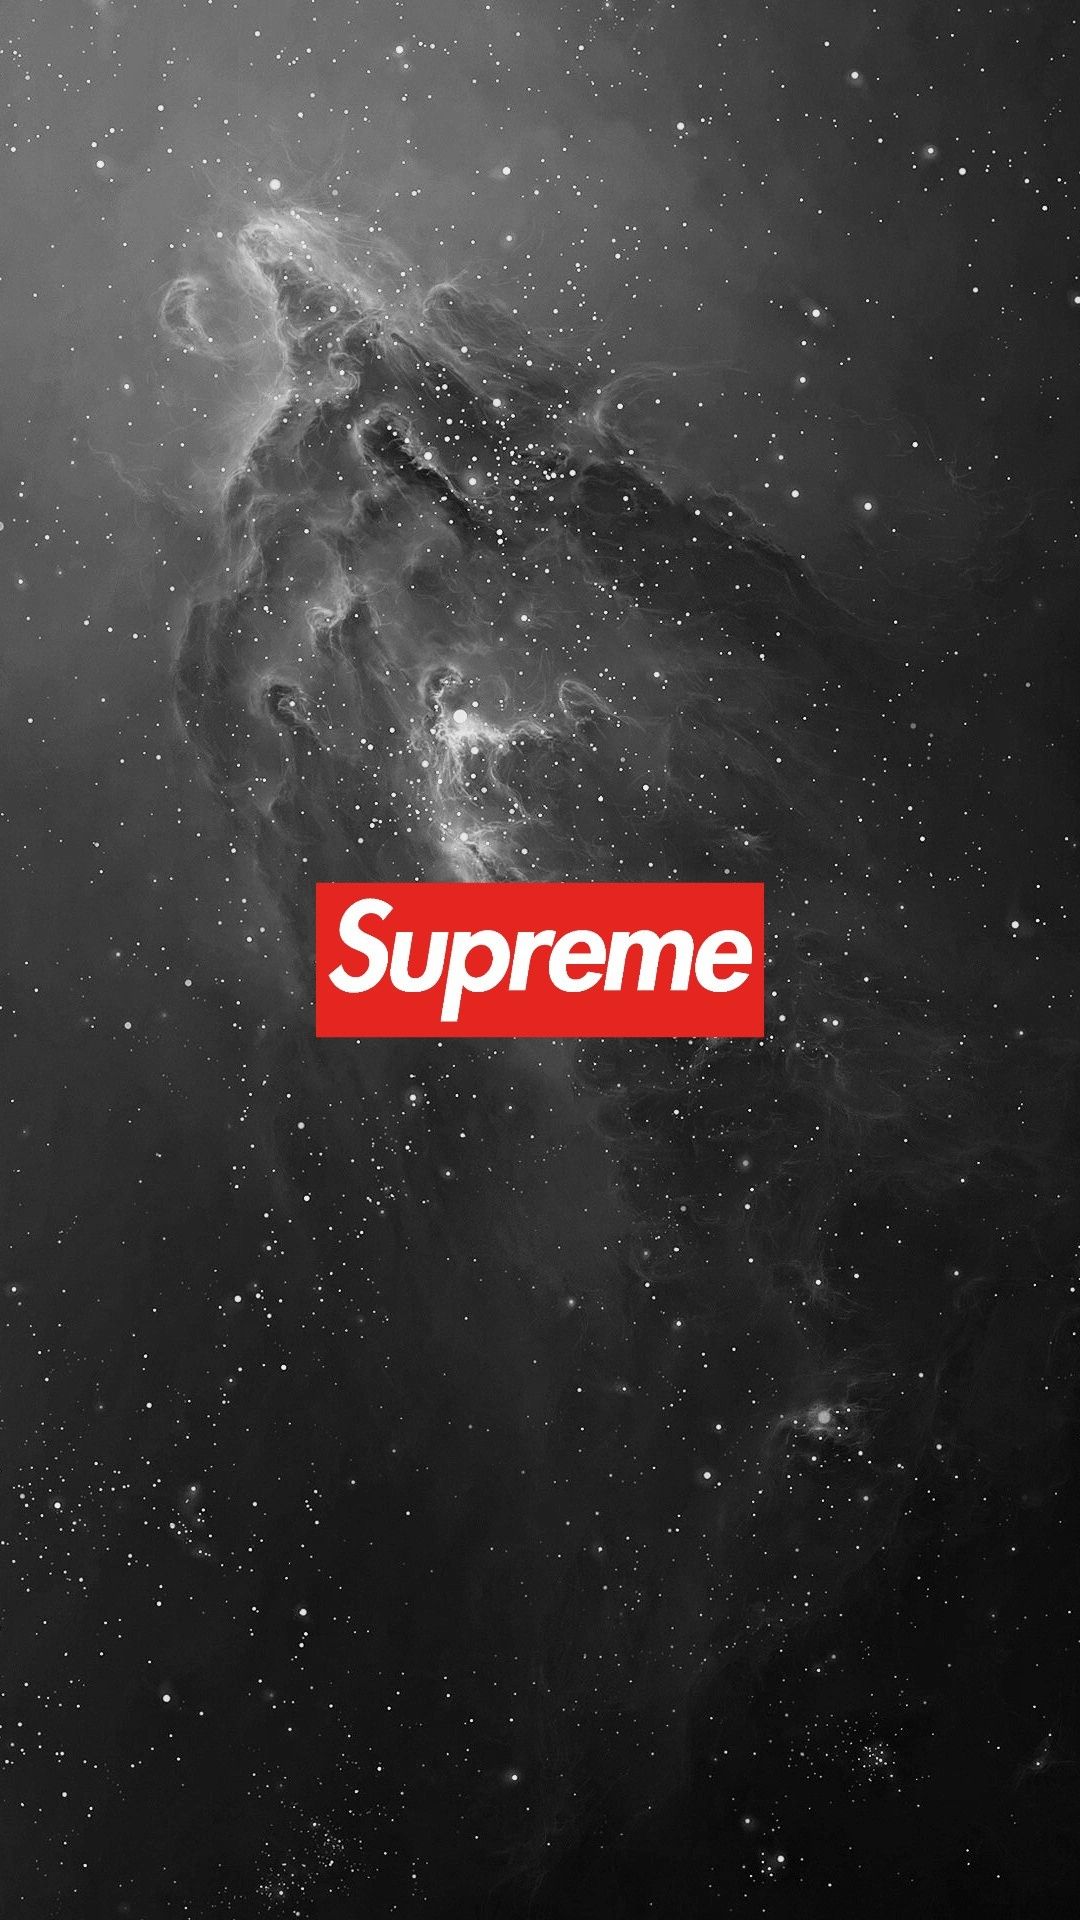 Supreme logo in the galaxy - Supreme